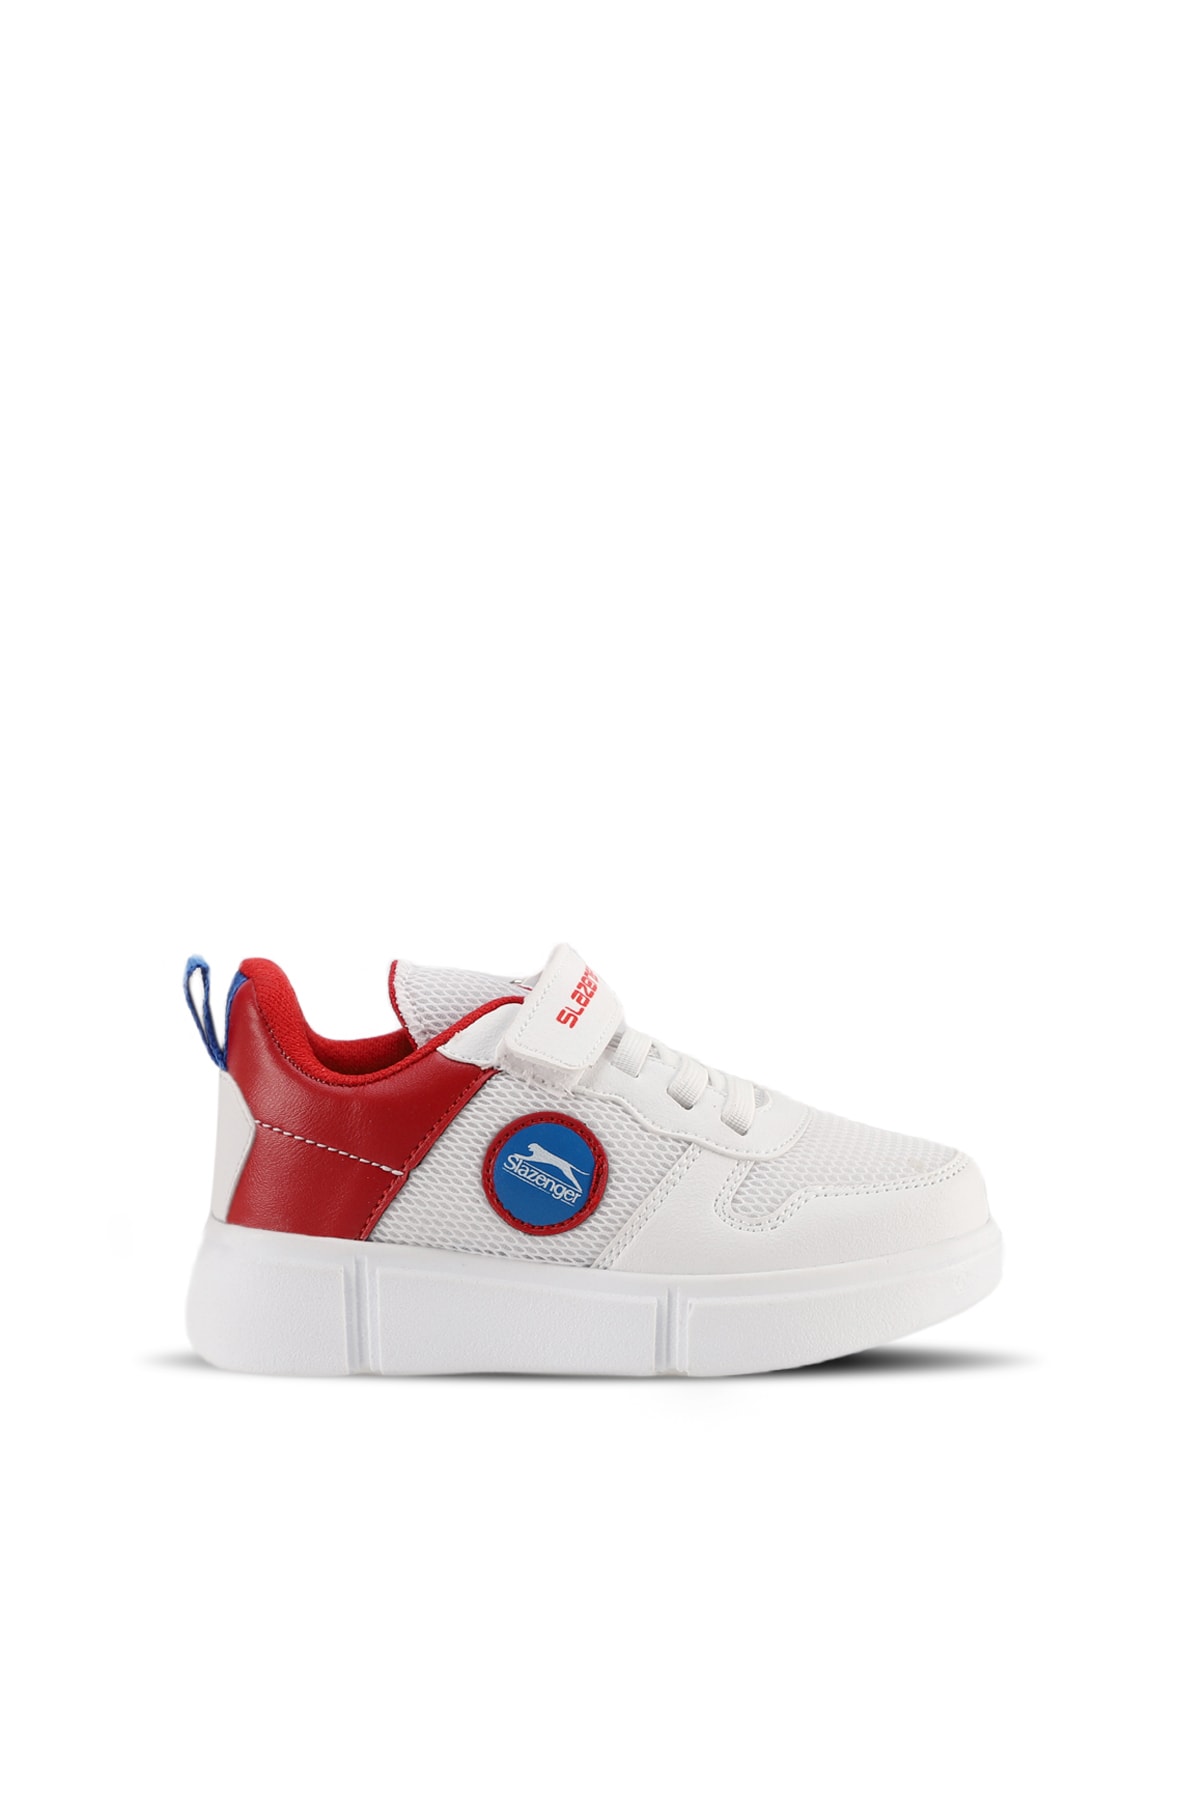 Slazenger Sneaker Shoes White / Red Unisex